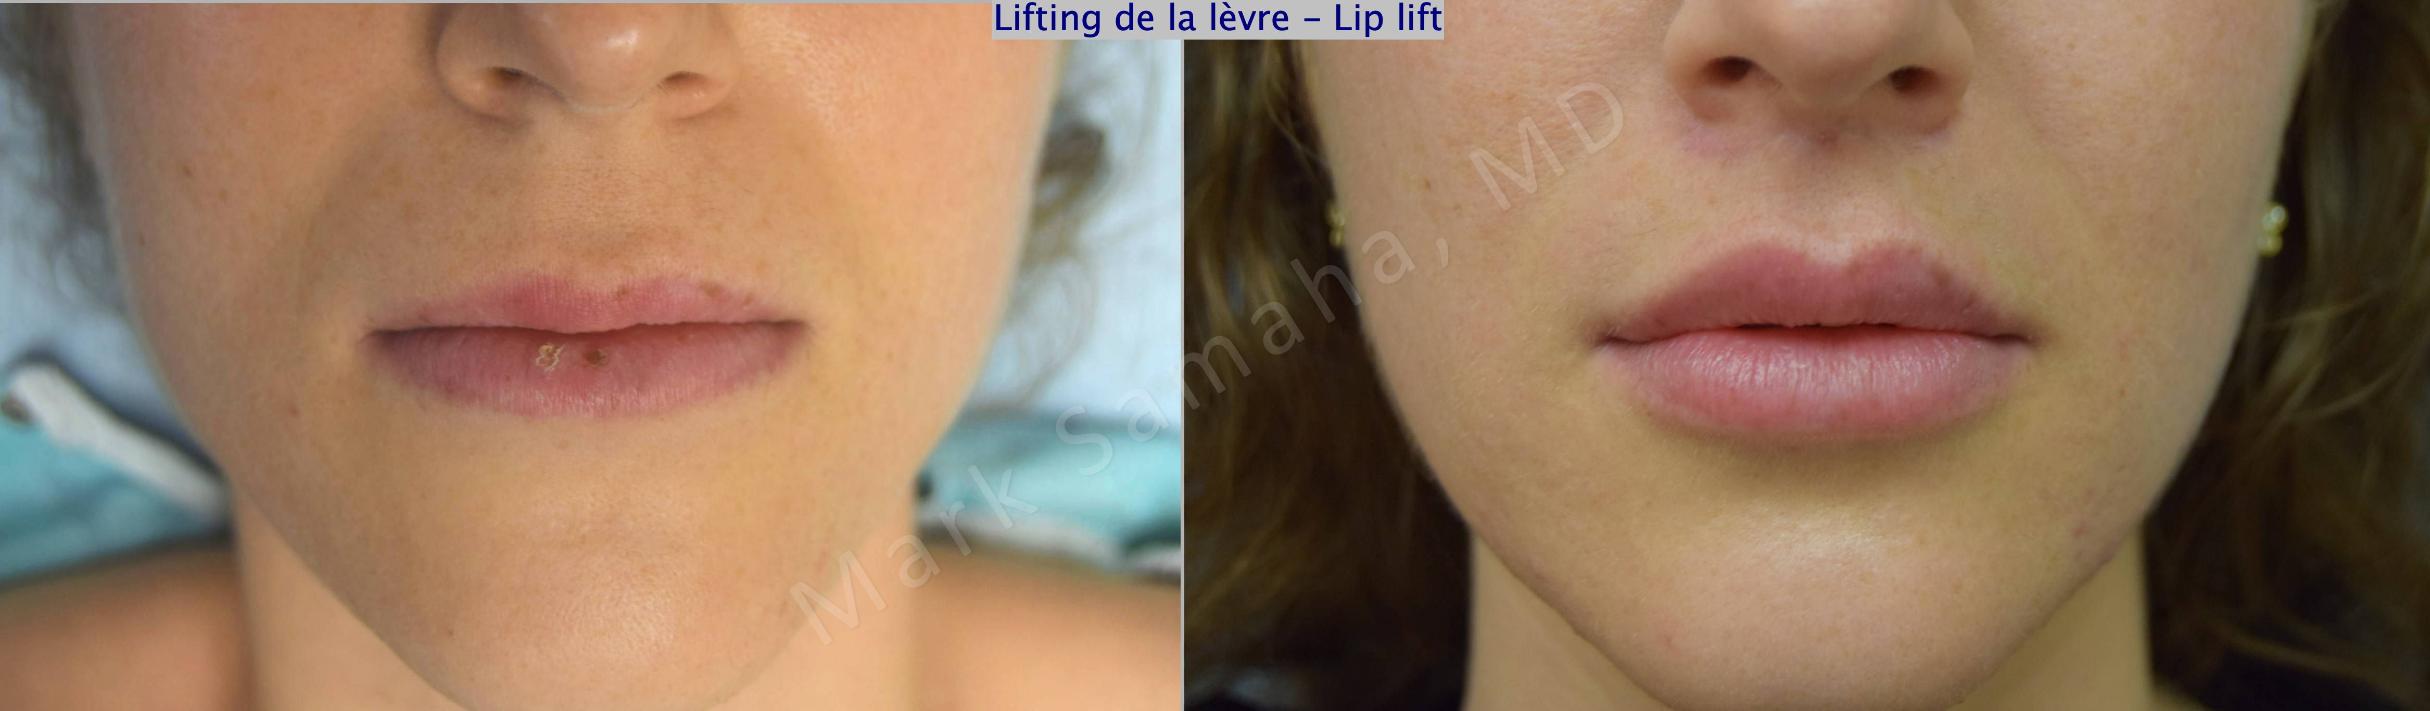 Before & After Lifting de la lèvre supérieure / Lip Lift  Case 174 Front View in Mount Royal, QC